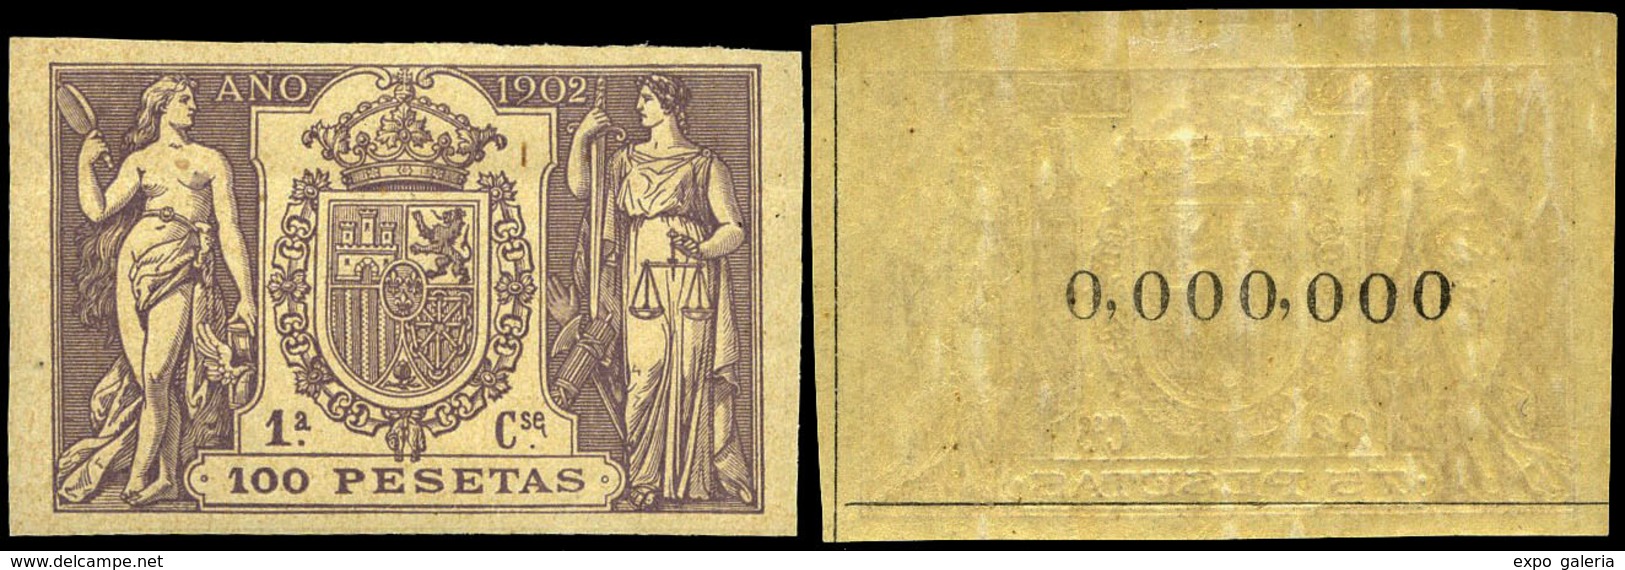 Alemany 499/509 - 1902. Pólizas. 11 Valores. Serie Completa Con Numeración 000.000 Al Dorso. Goma Original - Fiscaux